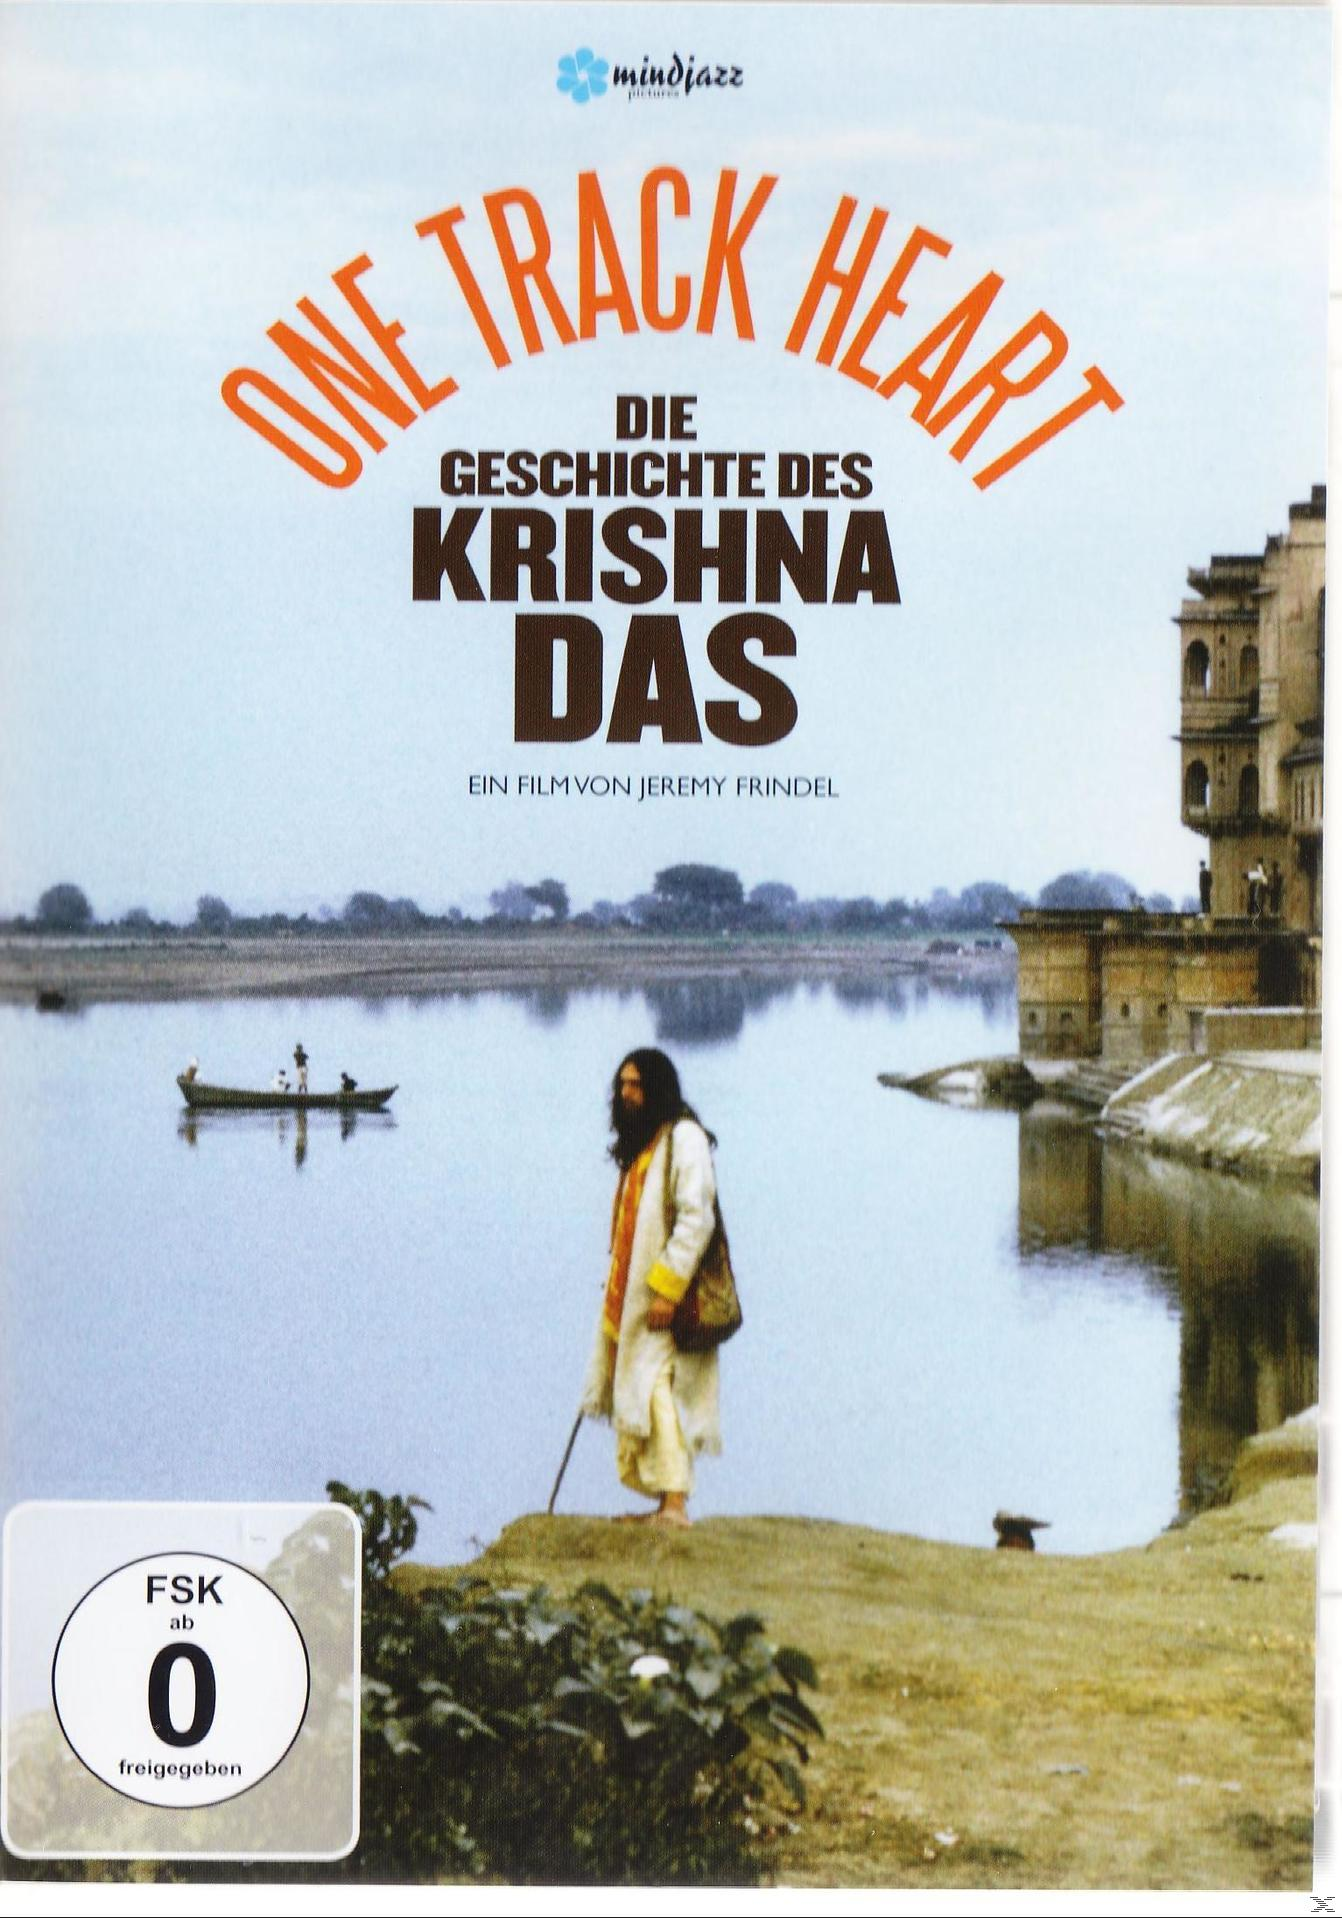 HEART DAS DES GESCHICHTE TRACK KRISHNA DVD - ONE DIE